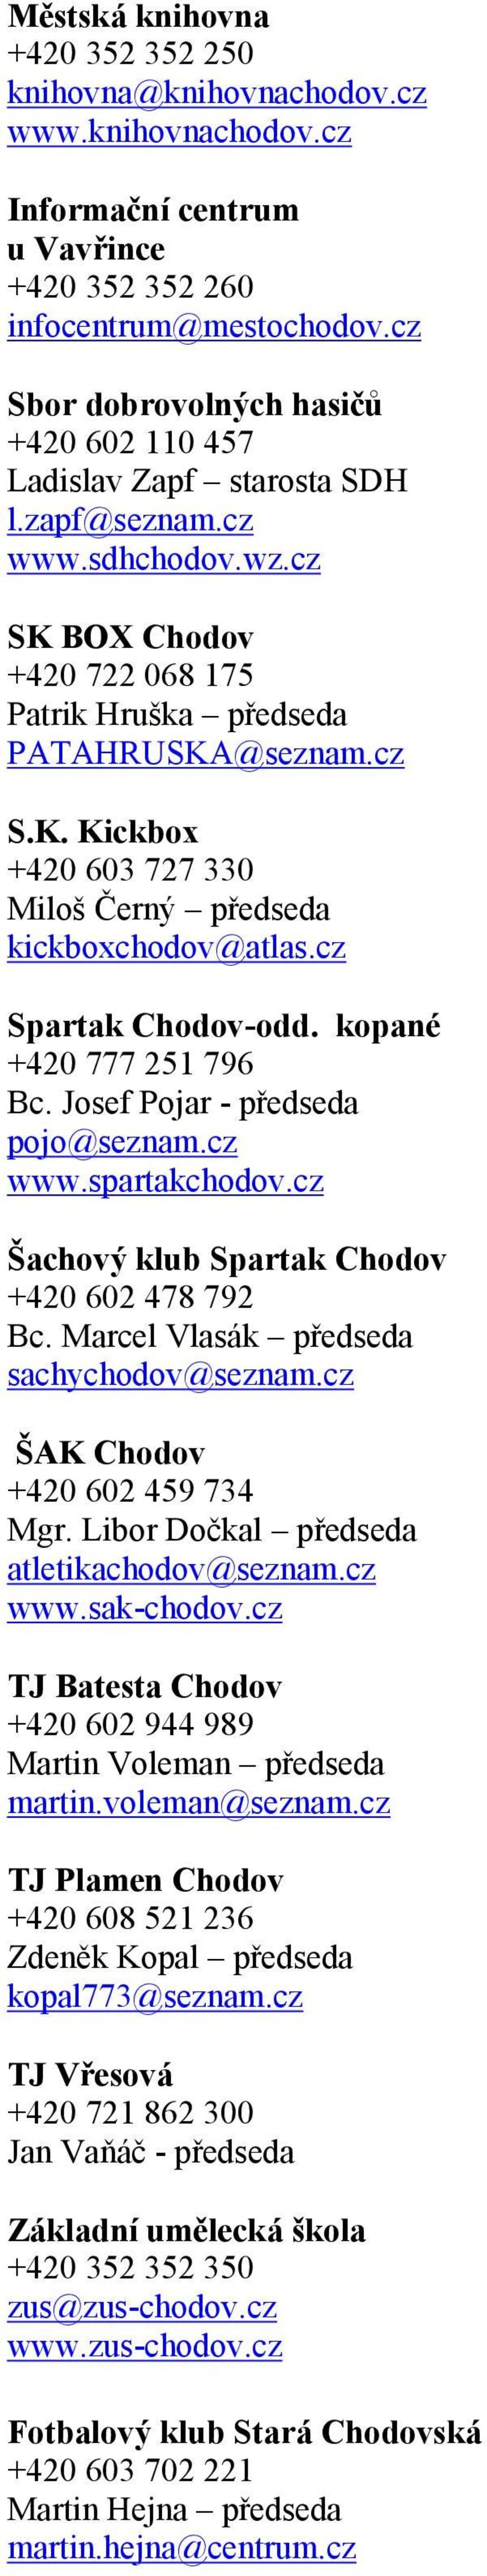 cz Spartak Chodov-odd. kopané +420 777 251 796 Bc. Josef Pojar - předseda pojo@seznam.cz www.spartakchodov.cz Šachový klub Spartak Chodov +420 602 478 792 Bc.